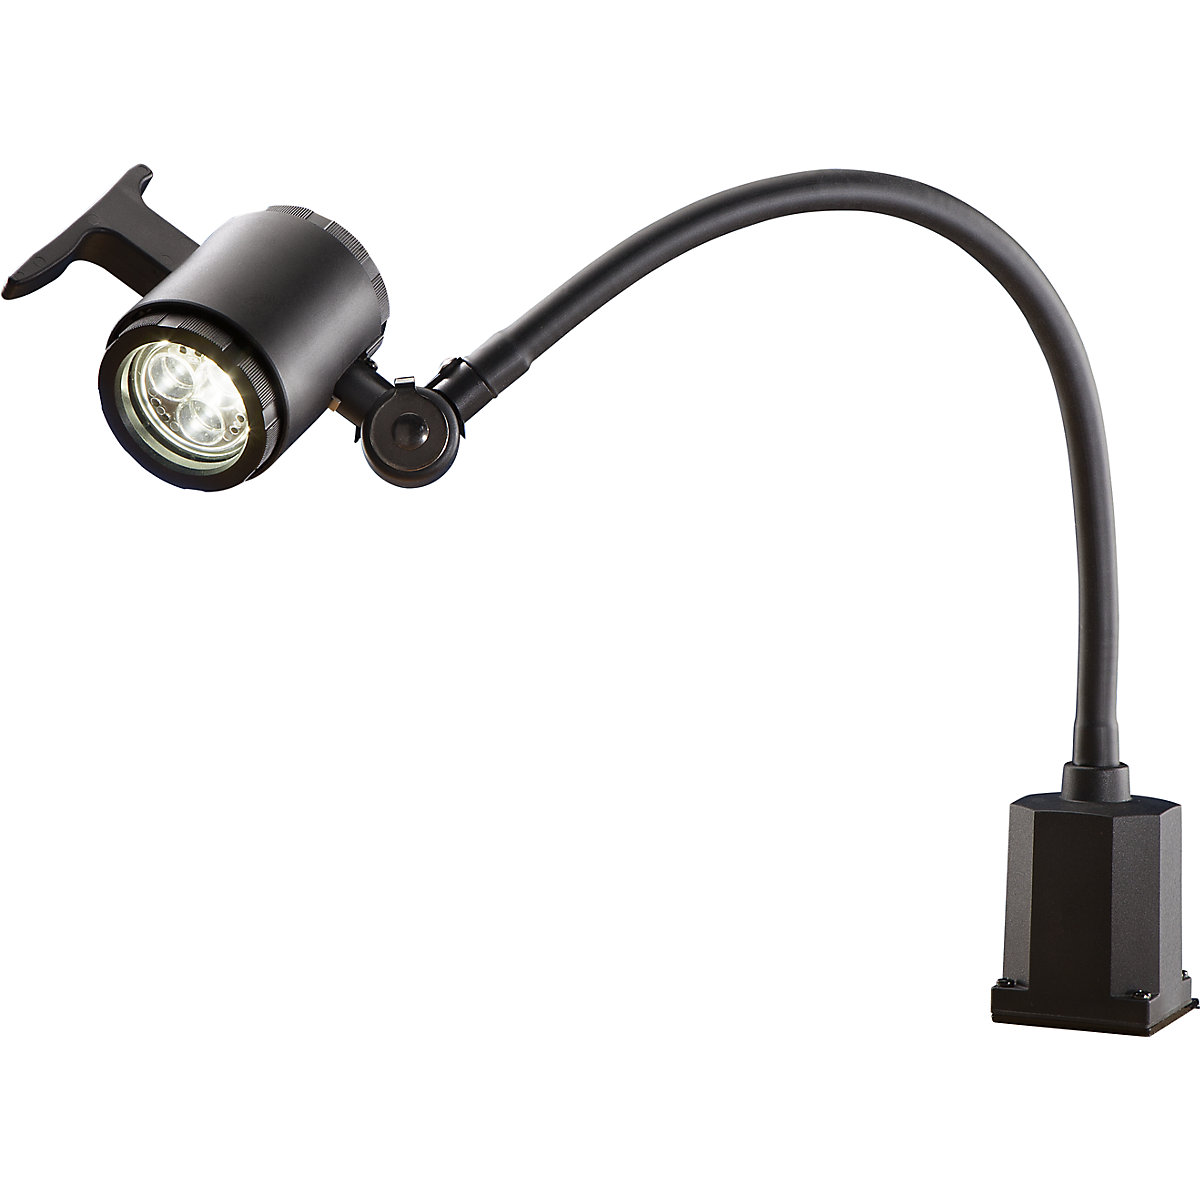 Lampă LED pentru utilaje, cu braţ flexibil, IP65